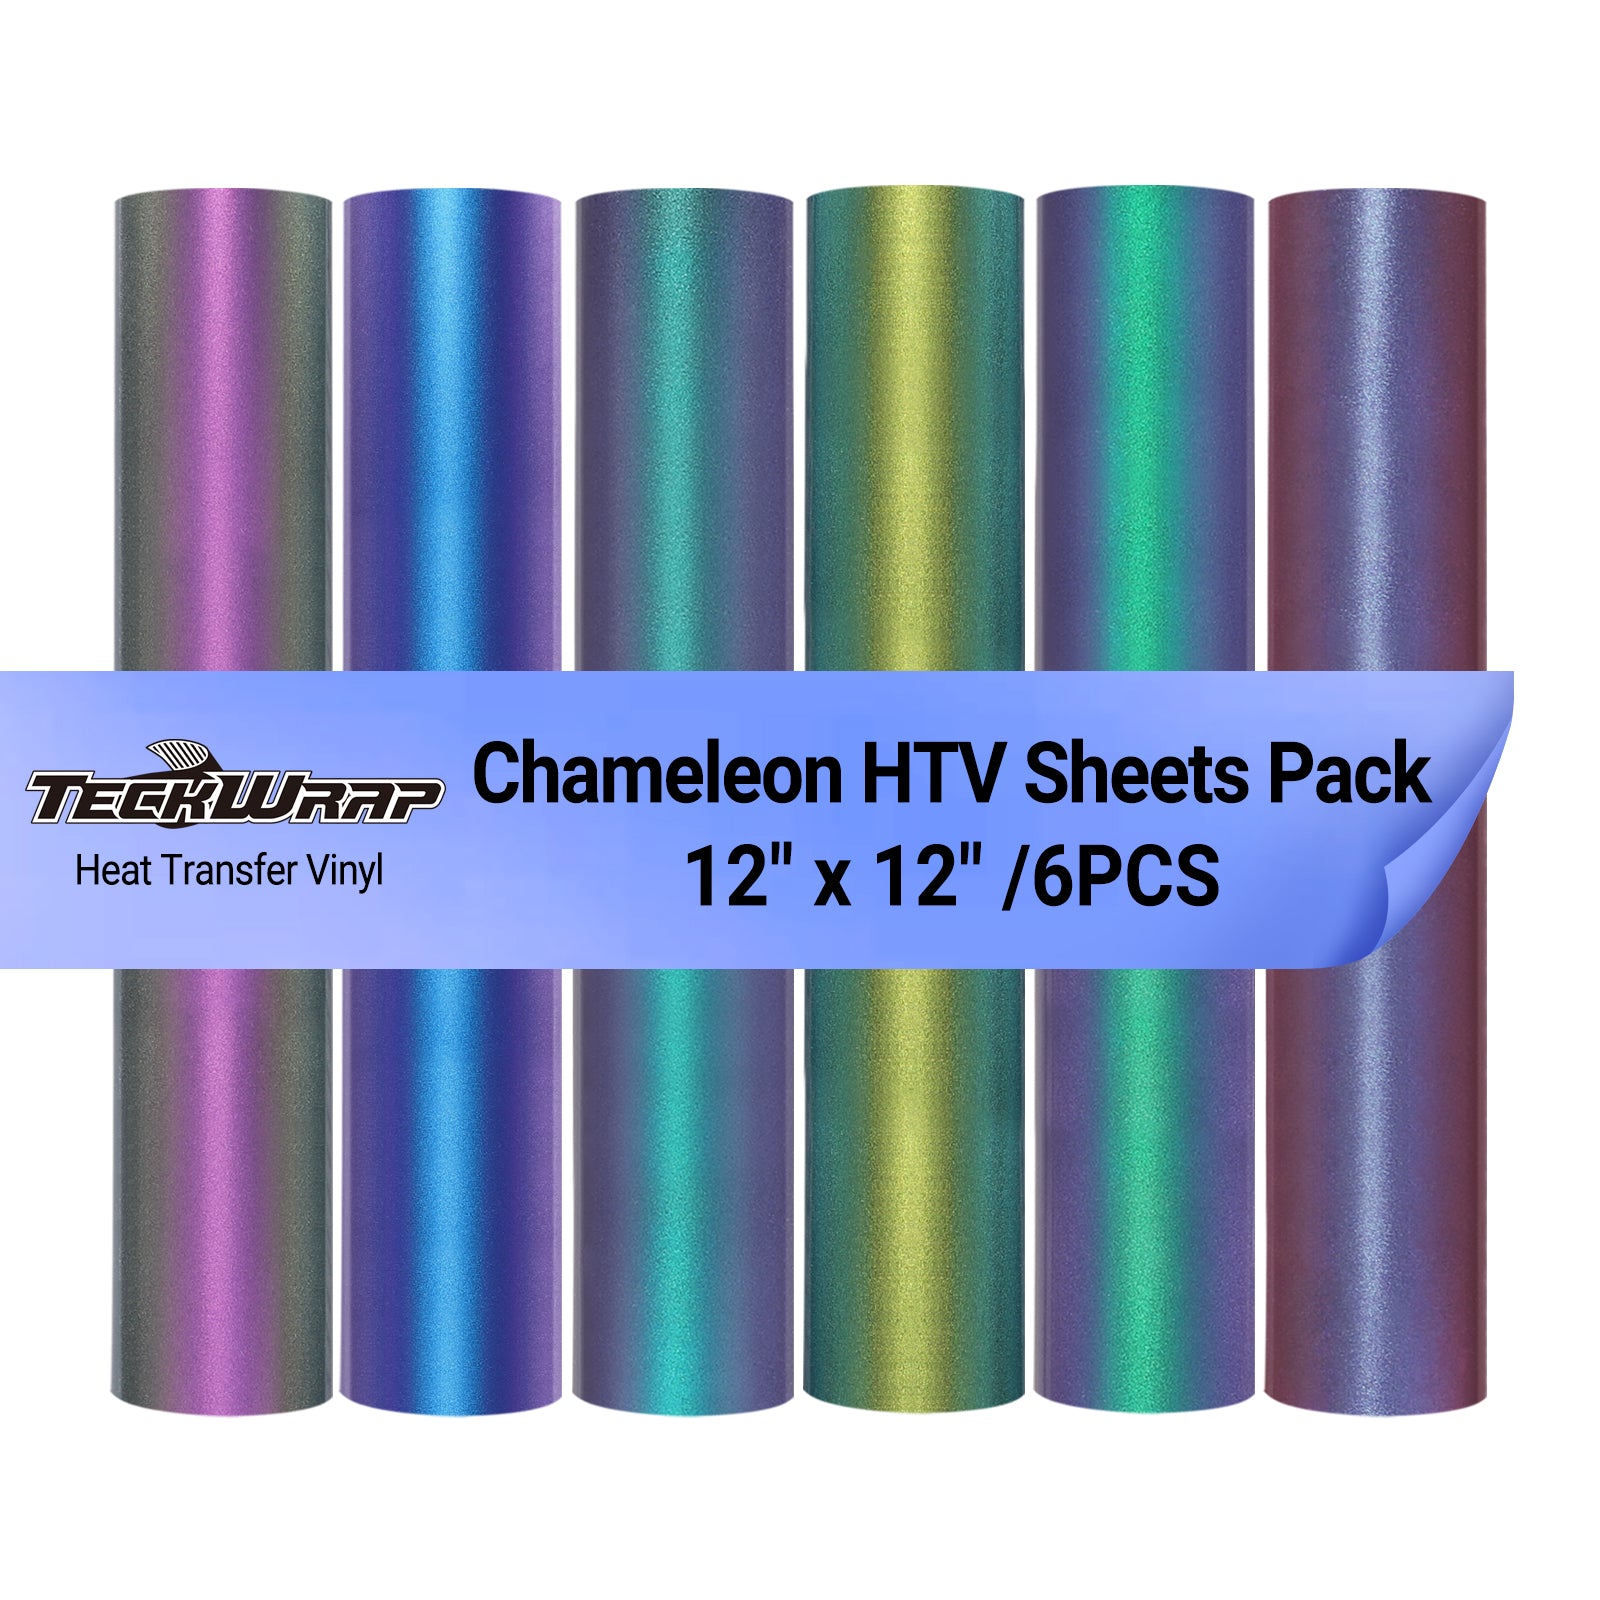 Chameleon HTV Sheets Pack